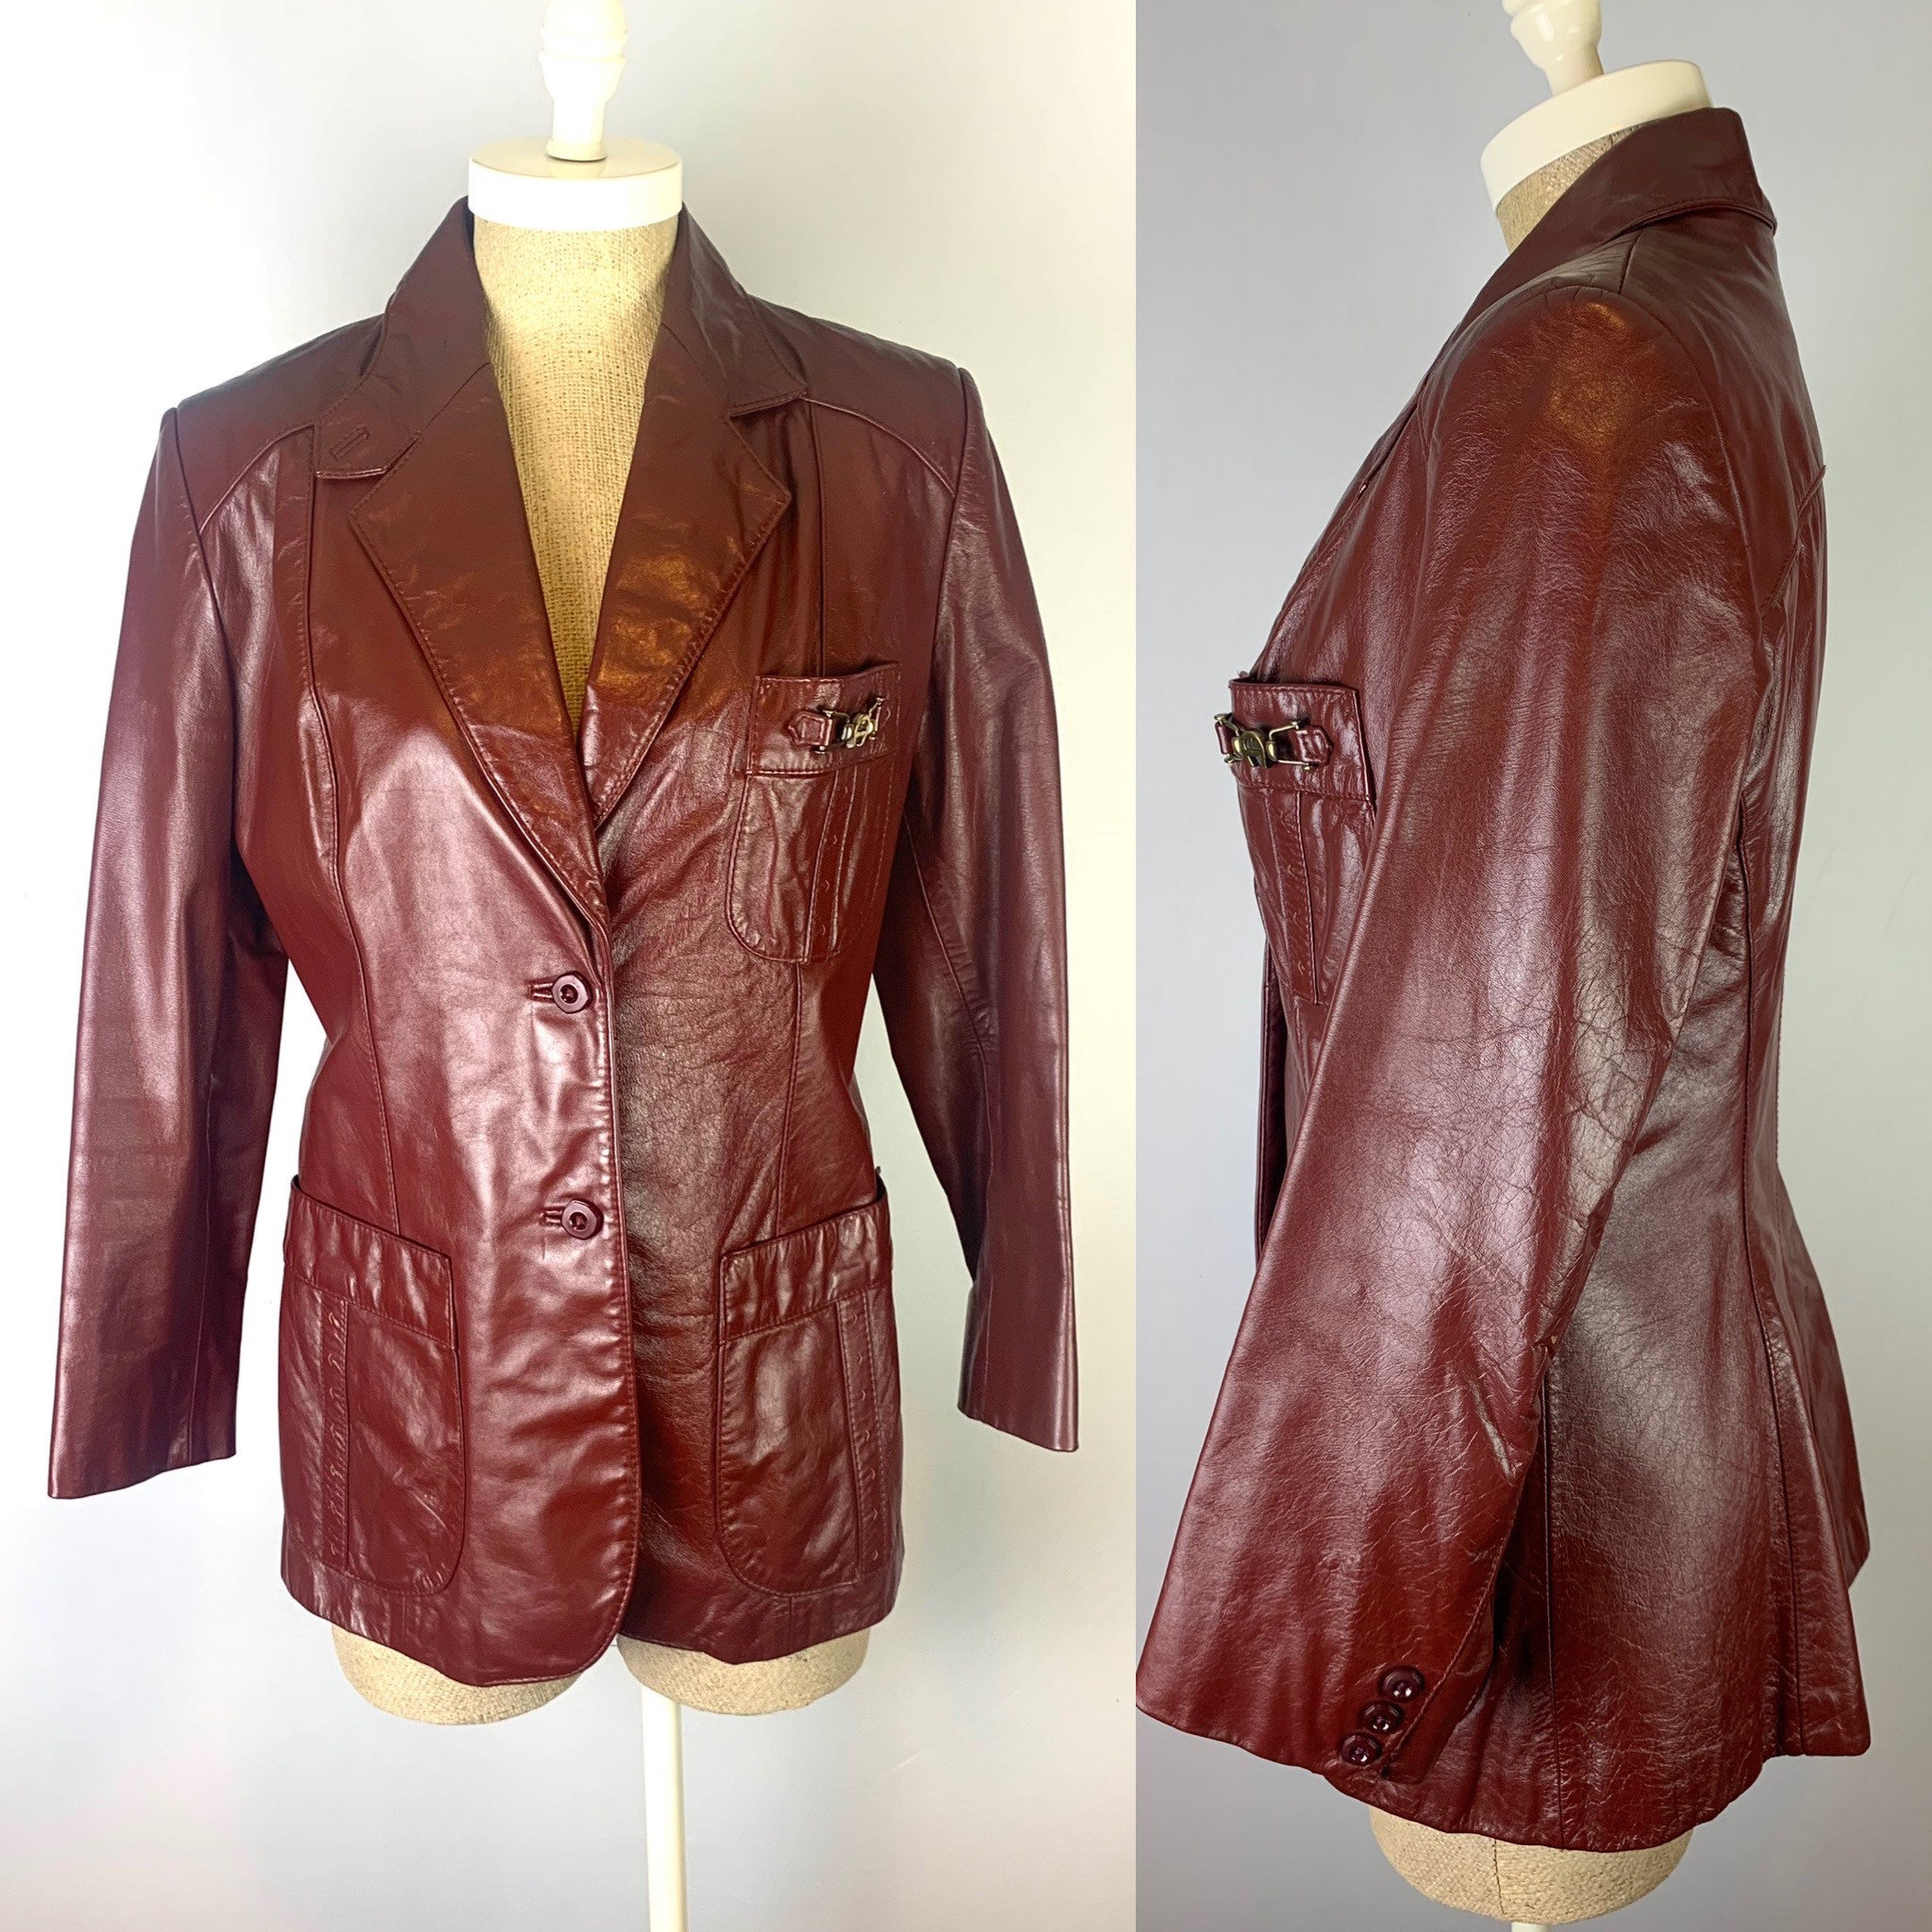 Oxblood Leather Jacket - Etsy